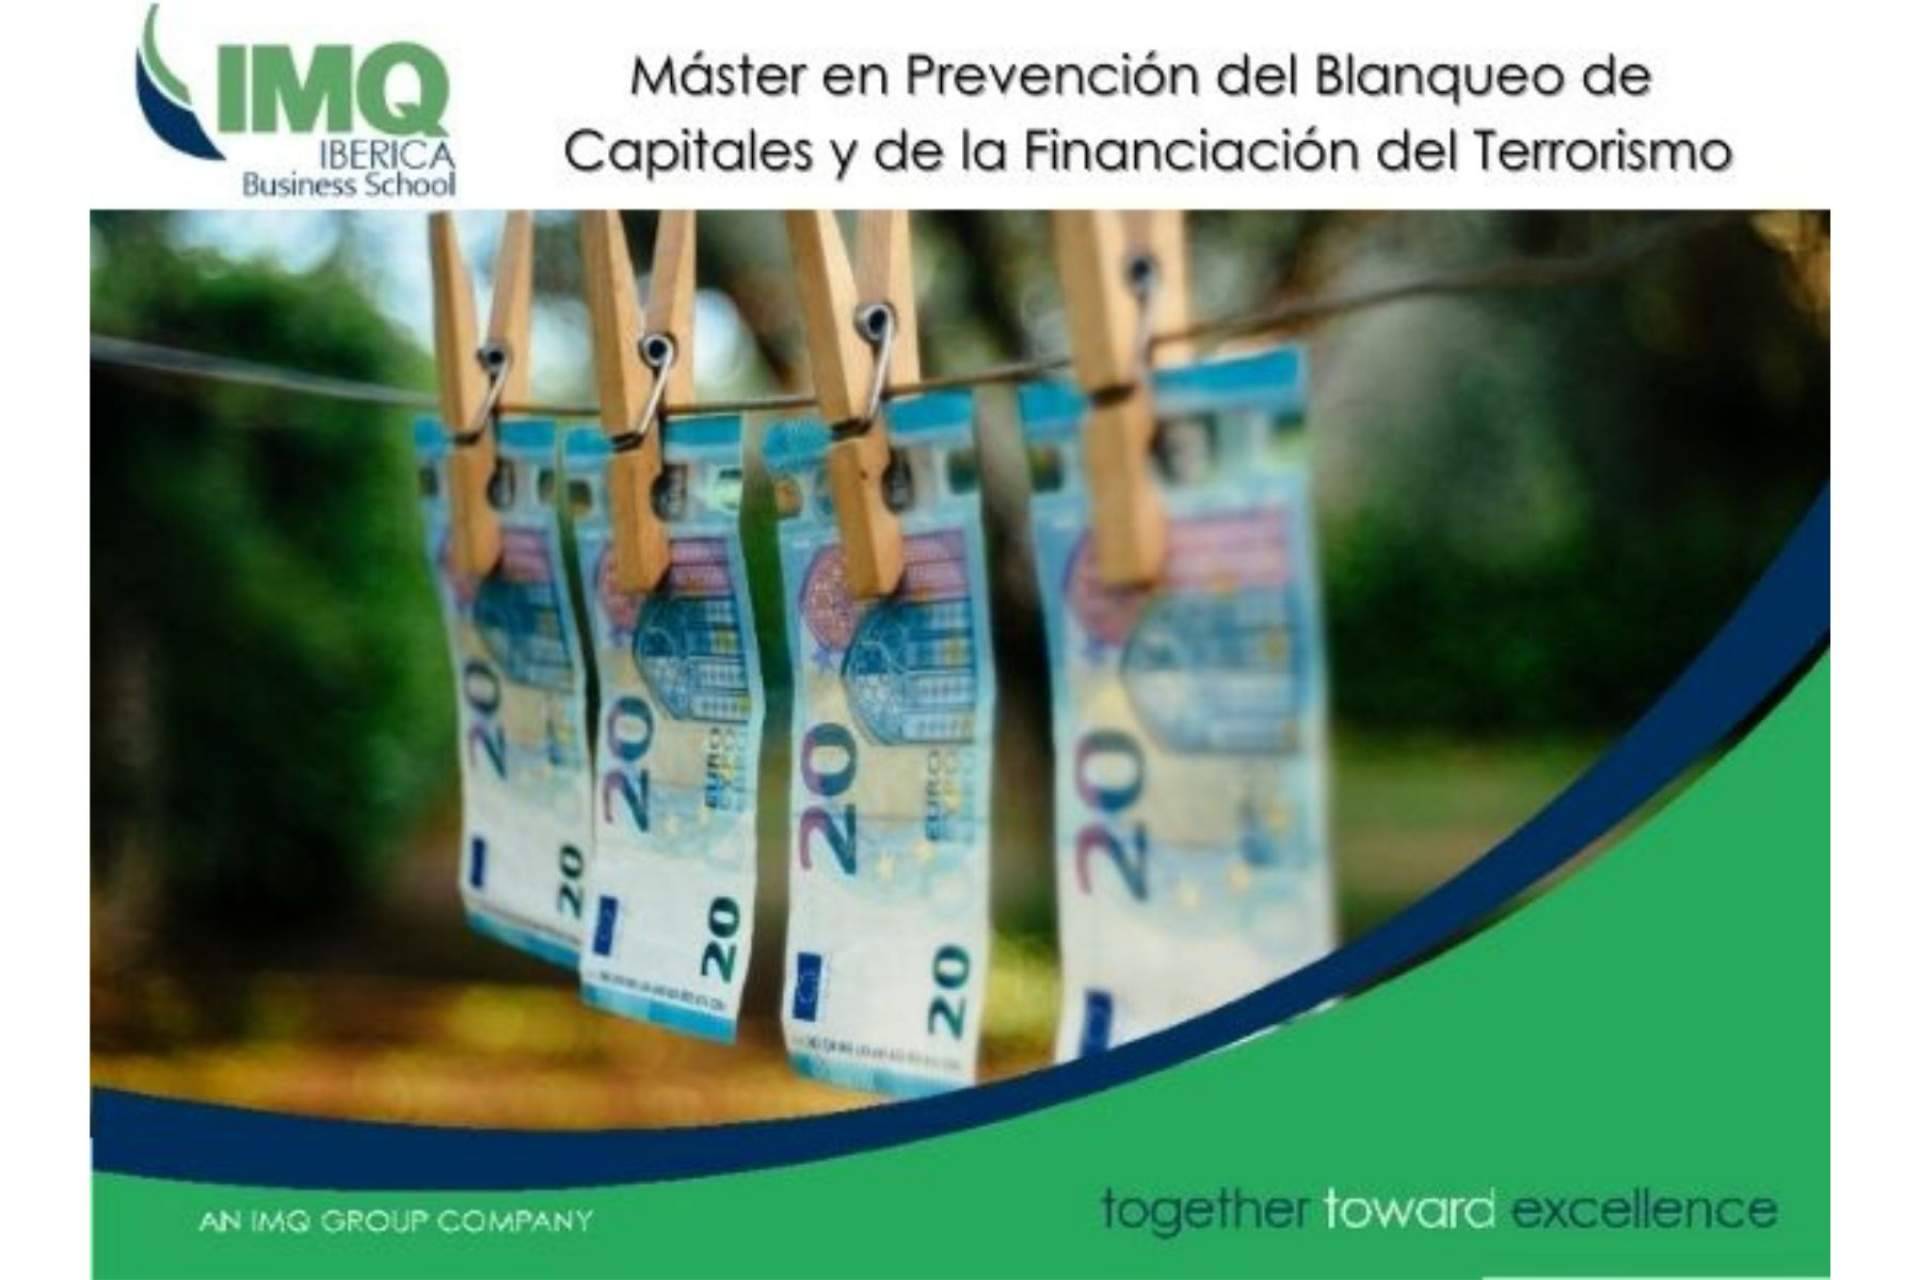 Prevención de blanqueo de capitales y financiación del terrorismo, gracias a la formación de IMQ Ibérica